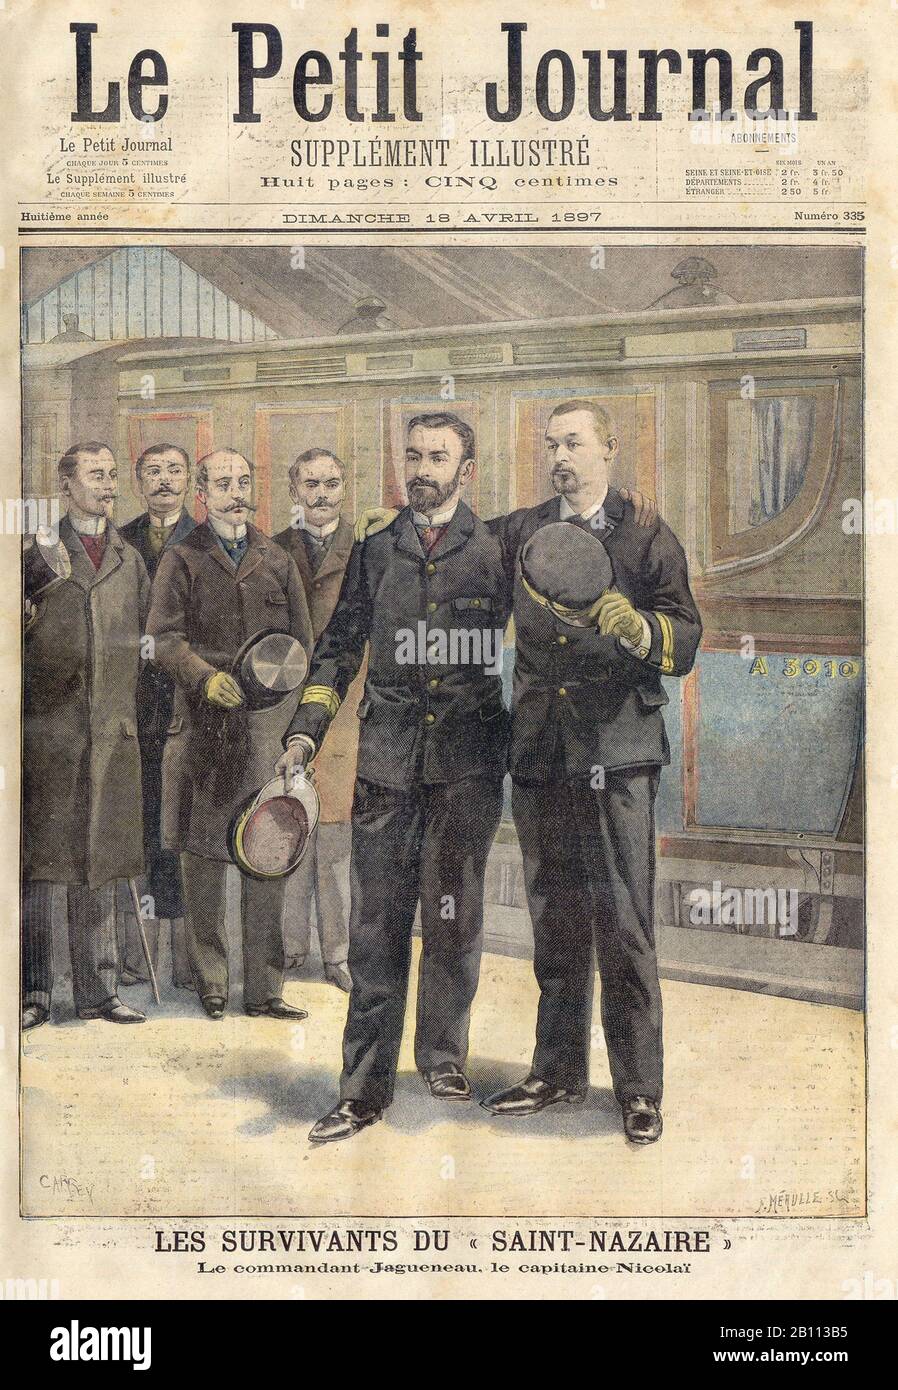 Les SURVIVANTS DU " SAINT-NAZAIRE - DIE ÜBERLEBENDEN DES "SAINT-NAZAIRE" - In der französischen Illustrierten Zeitung "Le Petit Journal" - 1897 Stockfoto